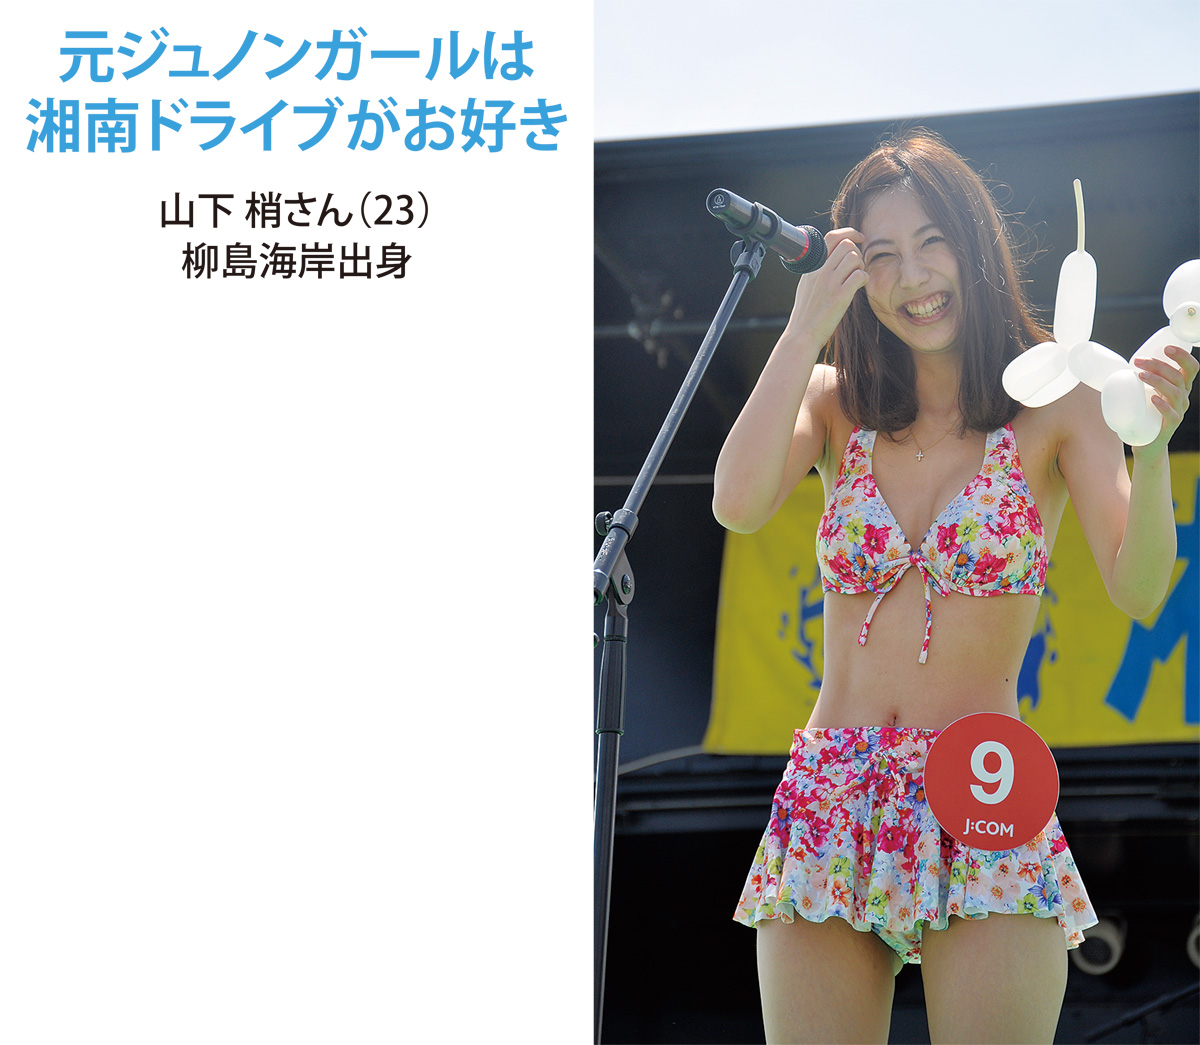 湘南ガールコンテスト２０１９準グランプリは茅ヶ崎出身 茅ヶ崎 タウンニュース